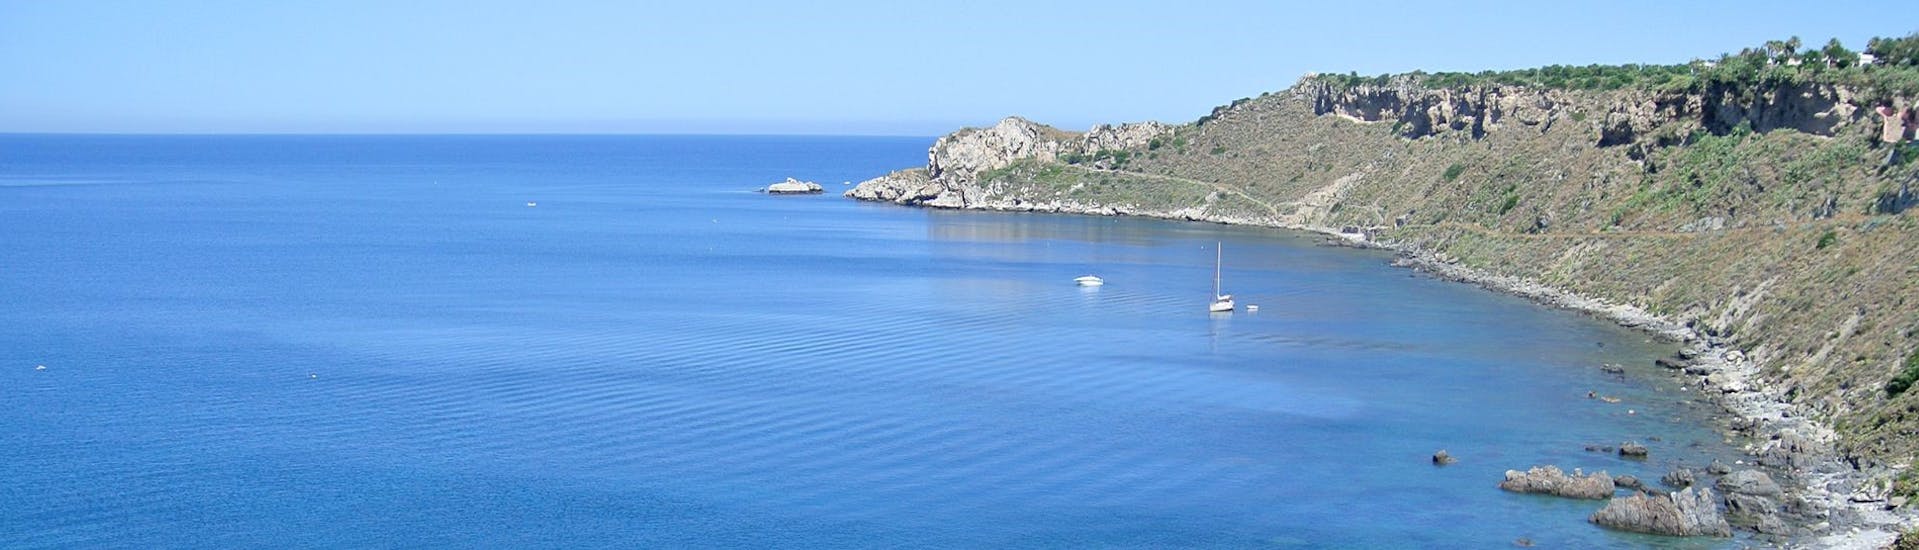 Uitzicht vanaf de boot van Sky Sea Charter tijdens de Privé Boottocht van Milazzo naar Panarea en Stromboli.